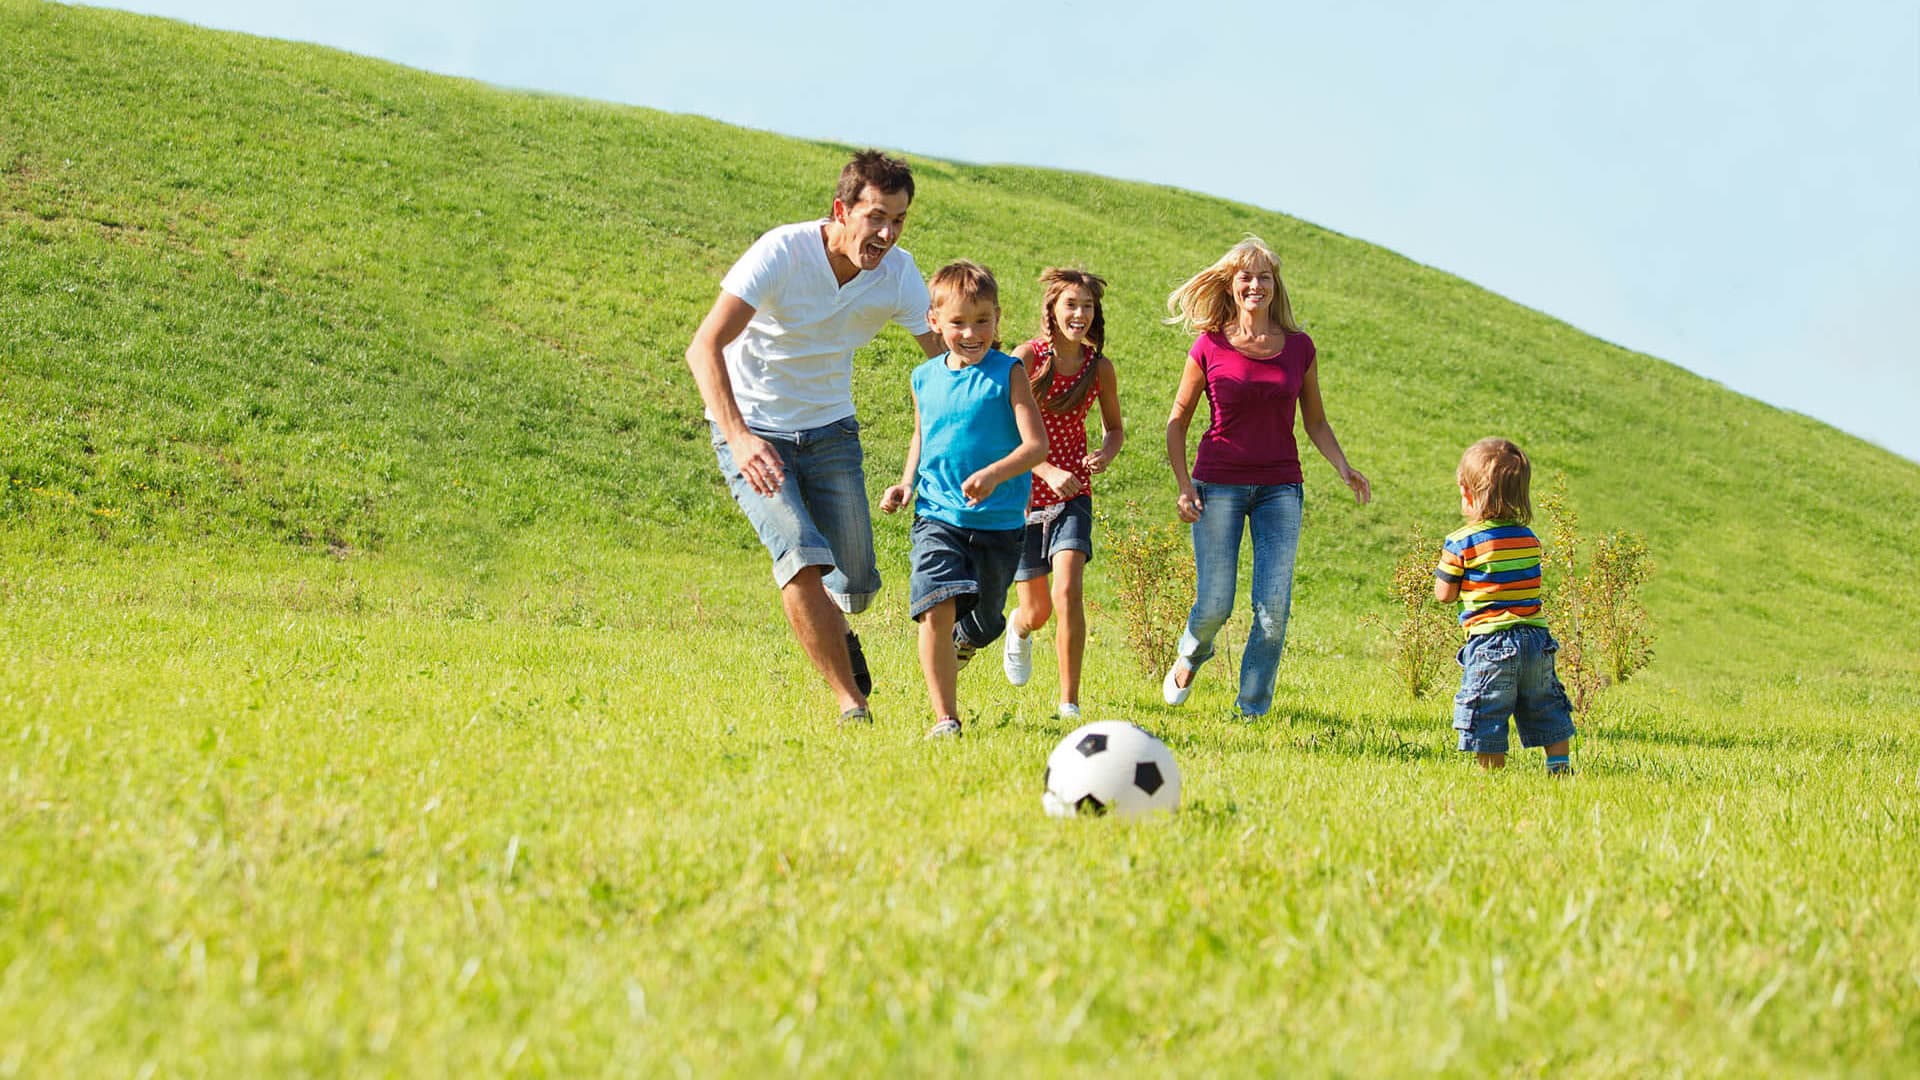 Социально активная семья. Спортивная семья на природе. Семейный досуг. Родители с детьми на природе. Счастливая спортивная семья.